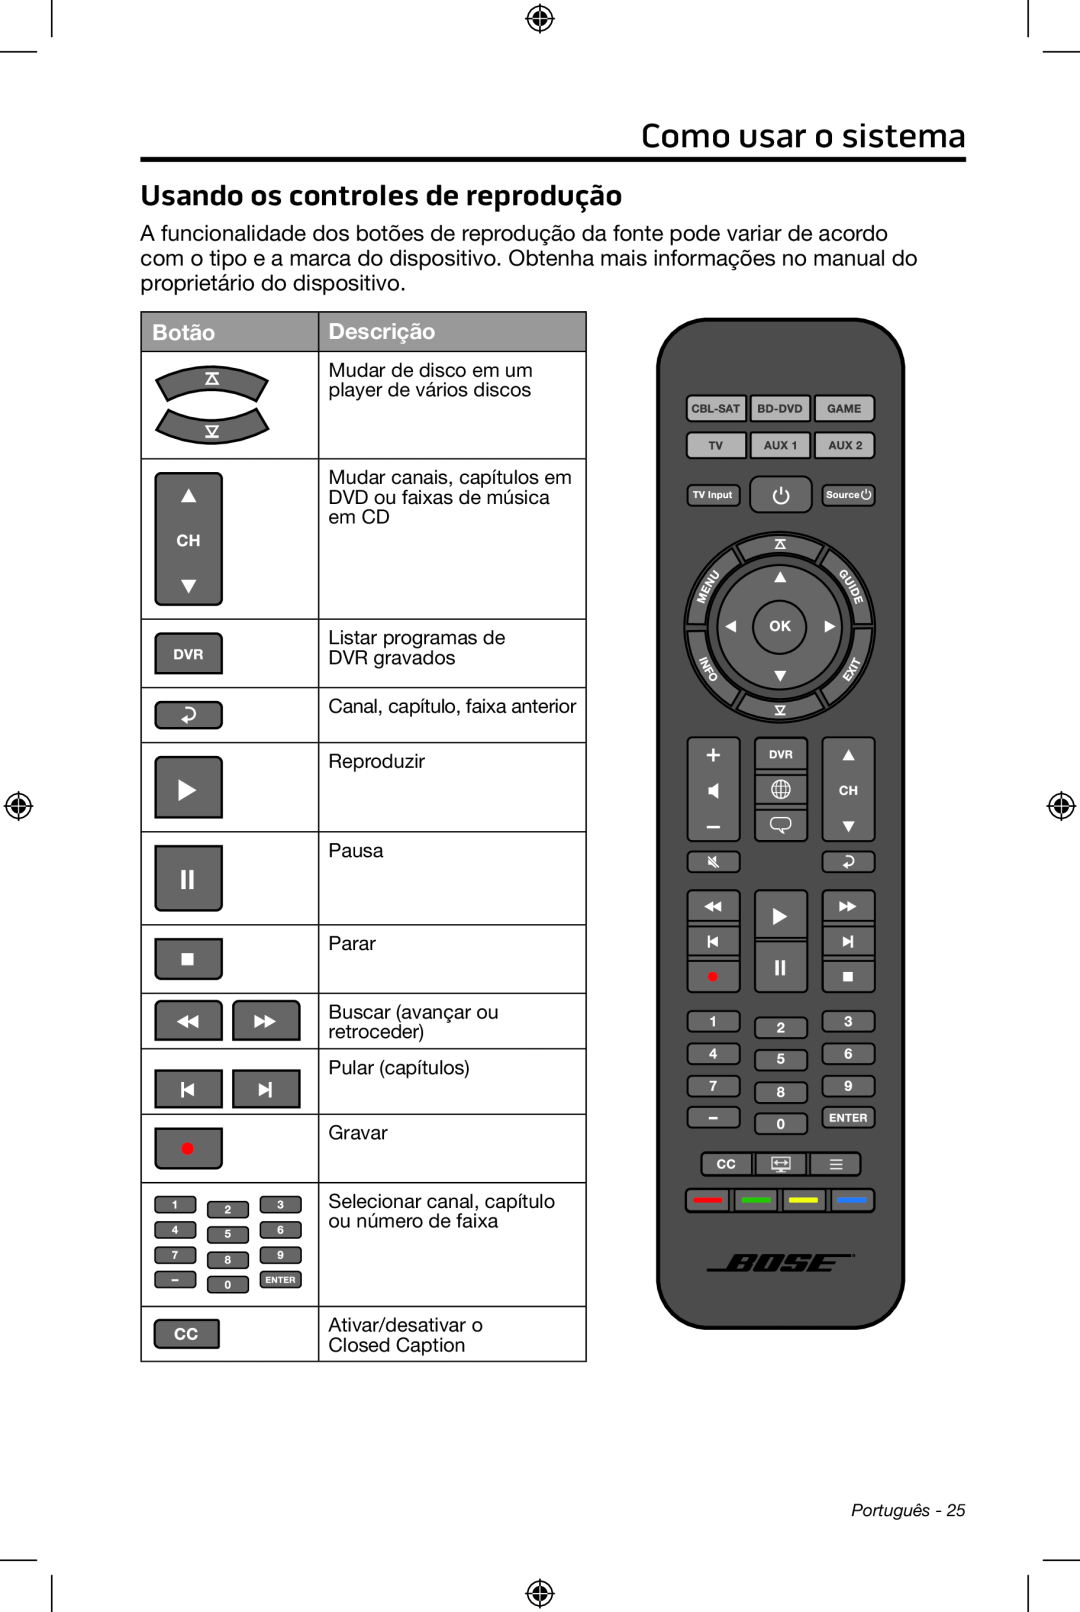 Bose CineMate 15/10 manual Como usar o sistema, Usando os controles de reprodução, Botão, Descrição 